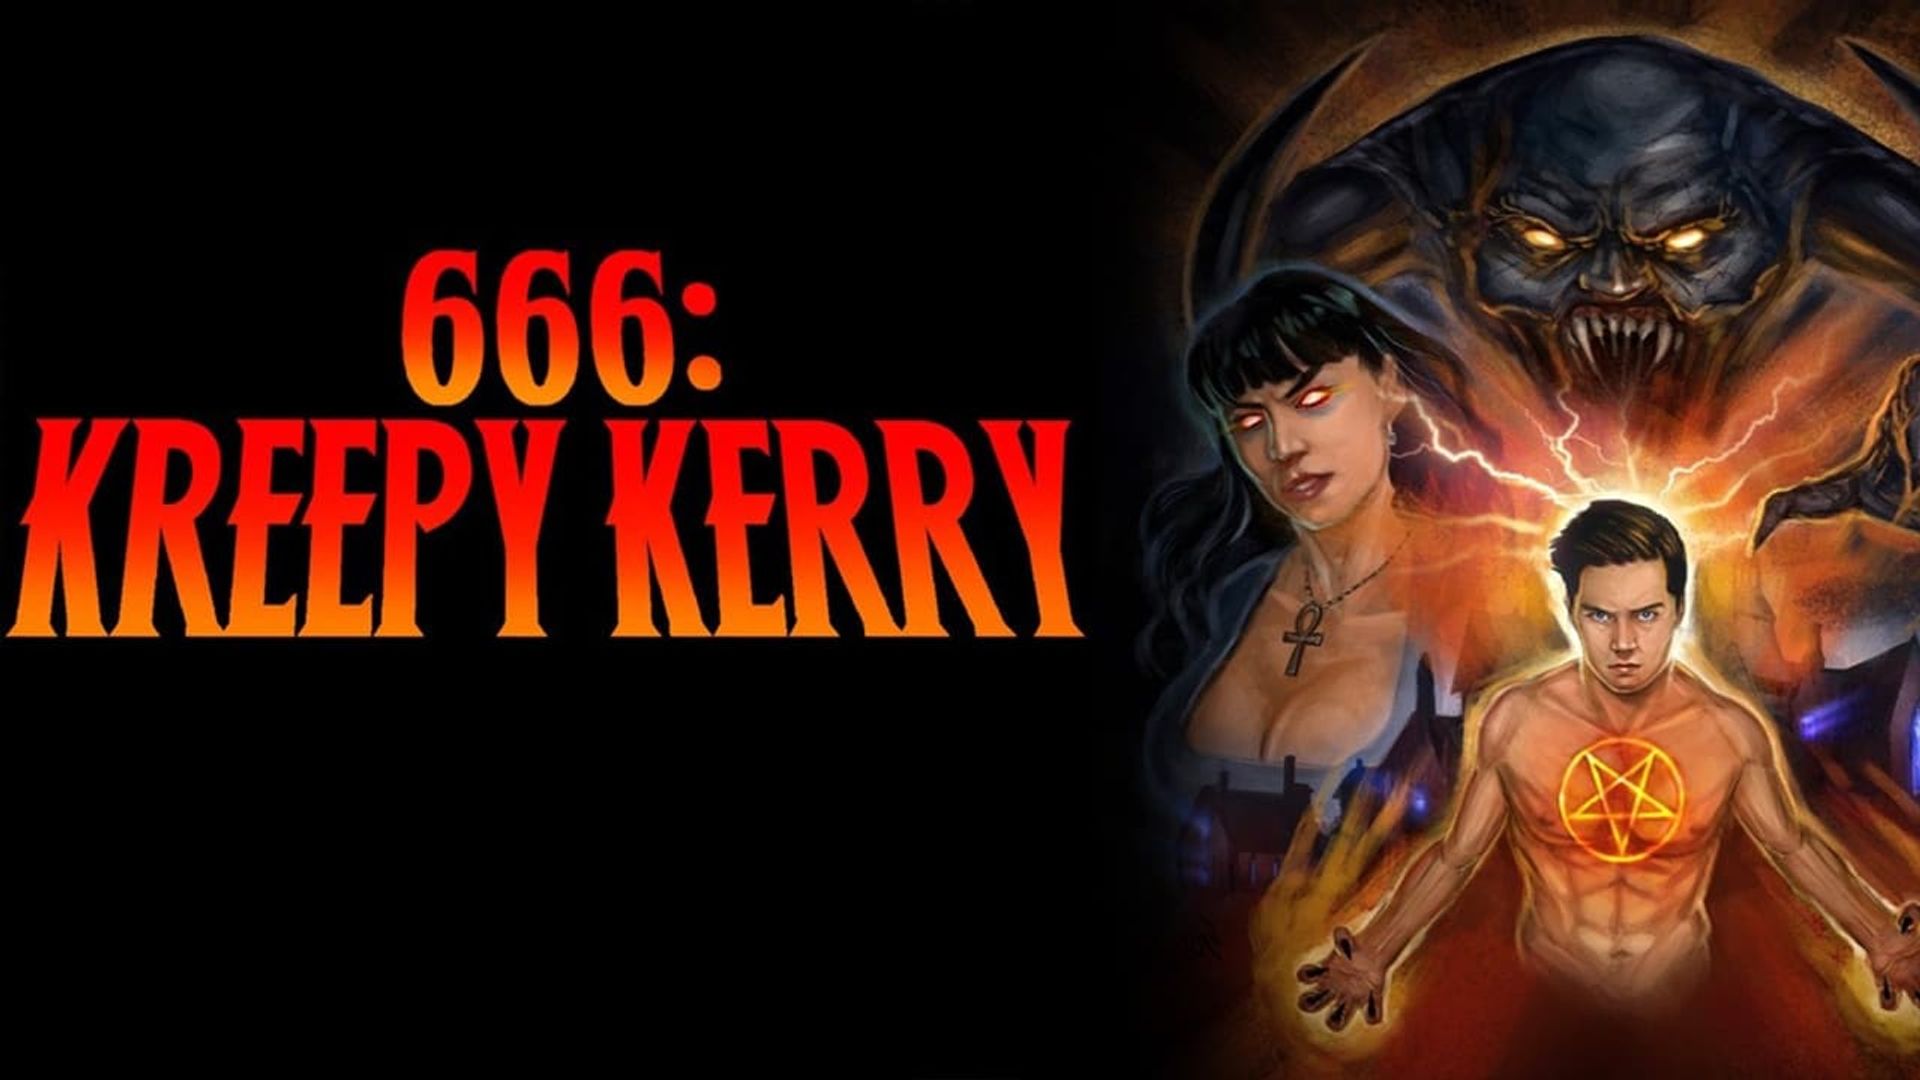 666: Kreepy Kerry background